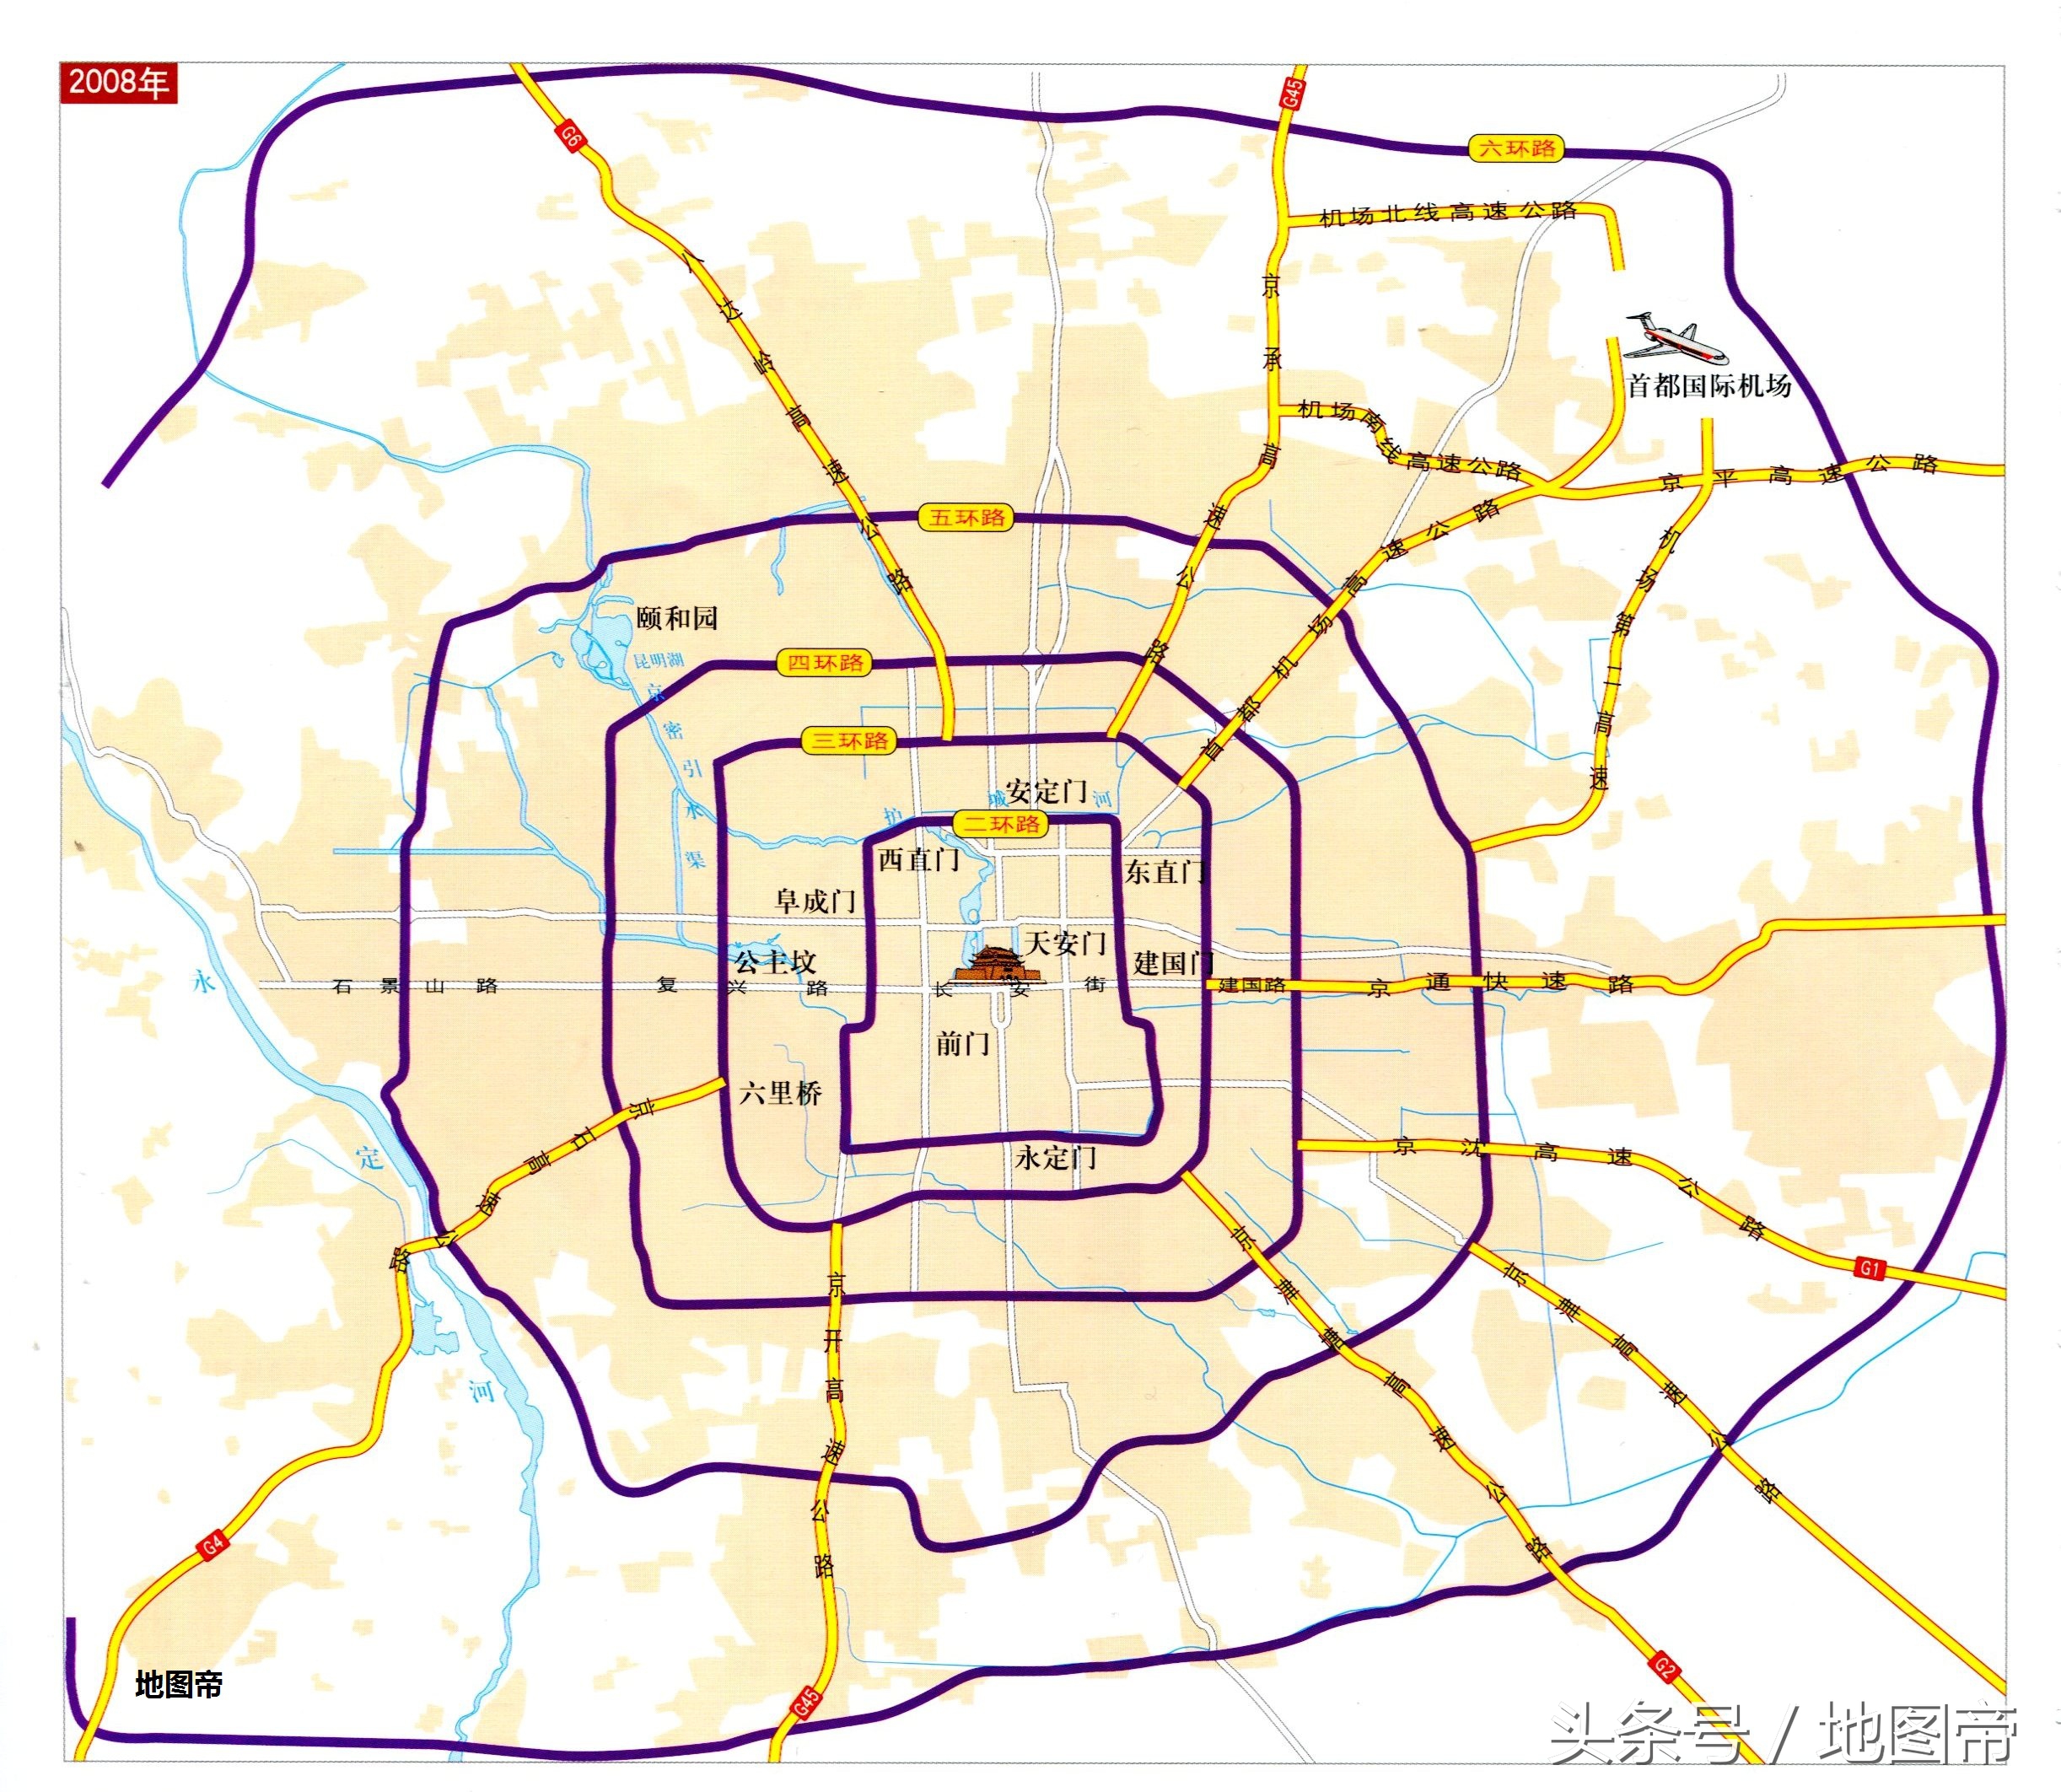 一环路是绕老北京绕紫禁城一周的环路,曾走有轨电车.